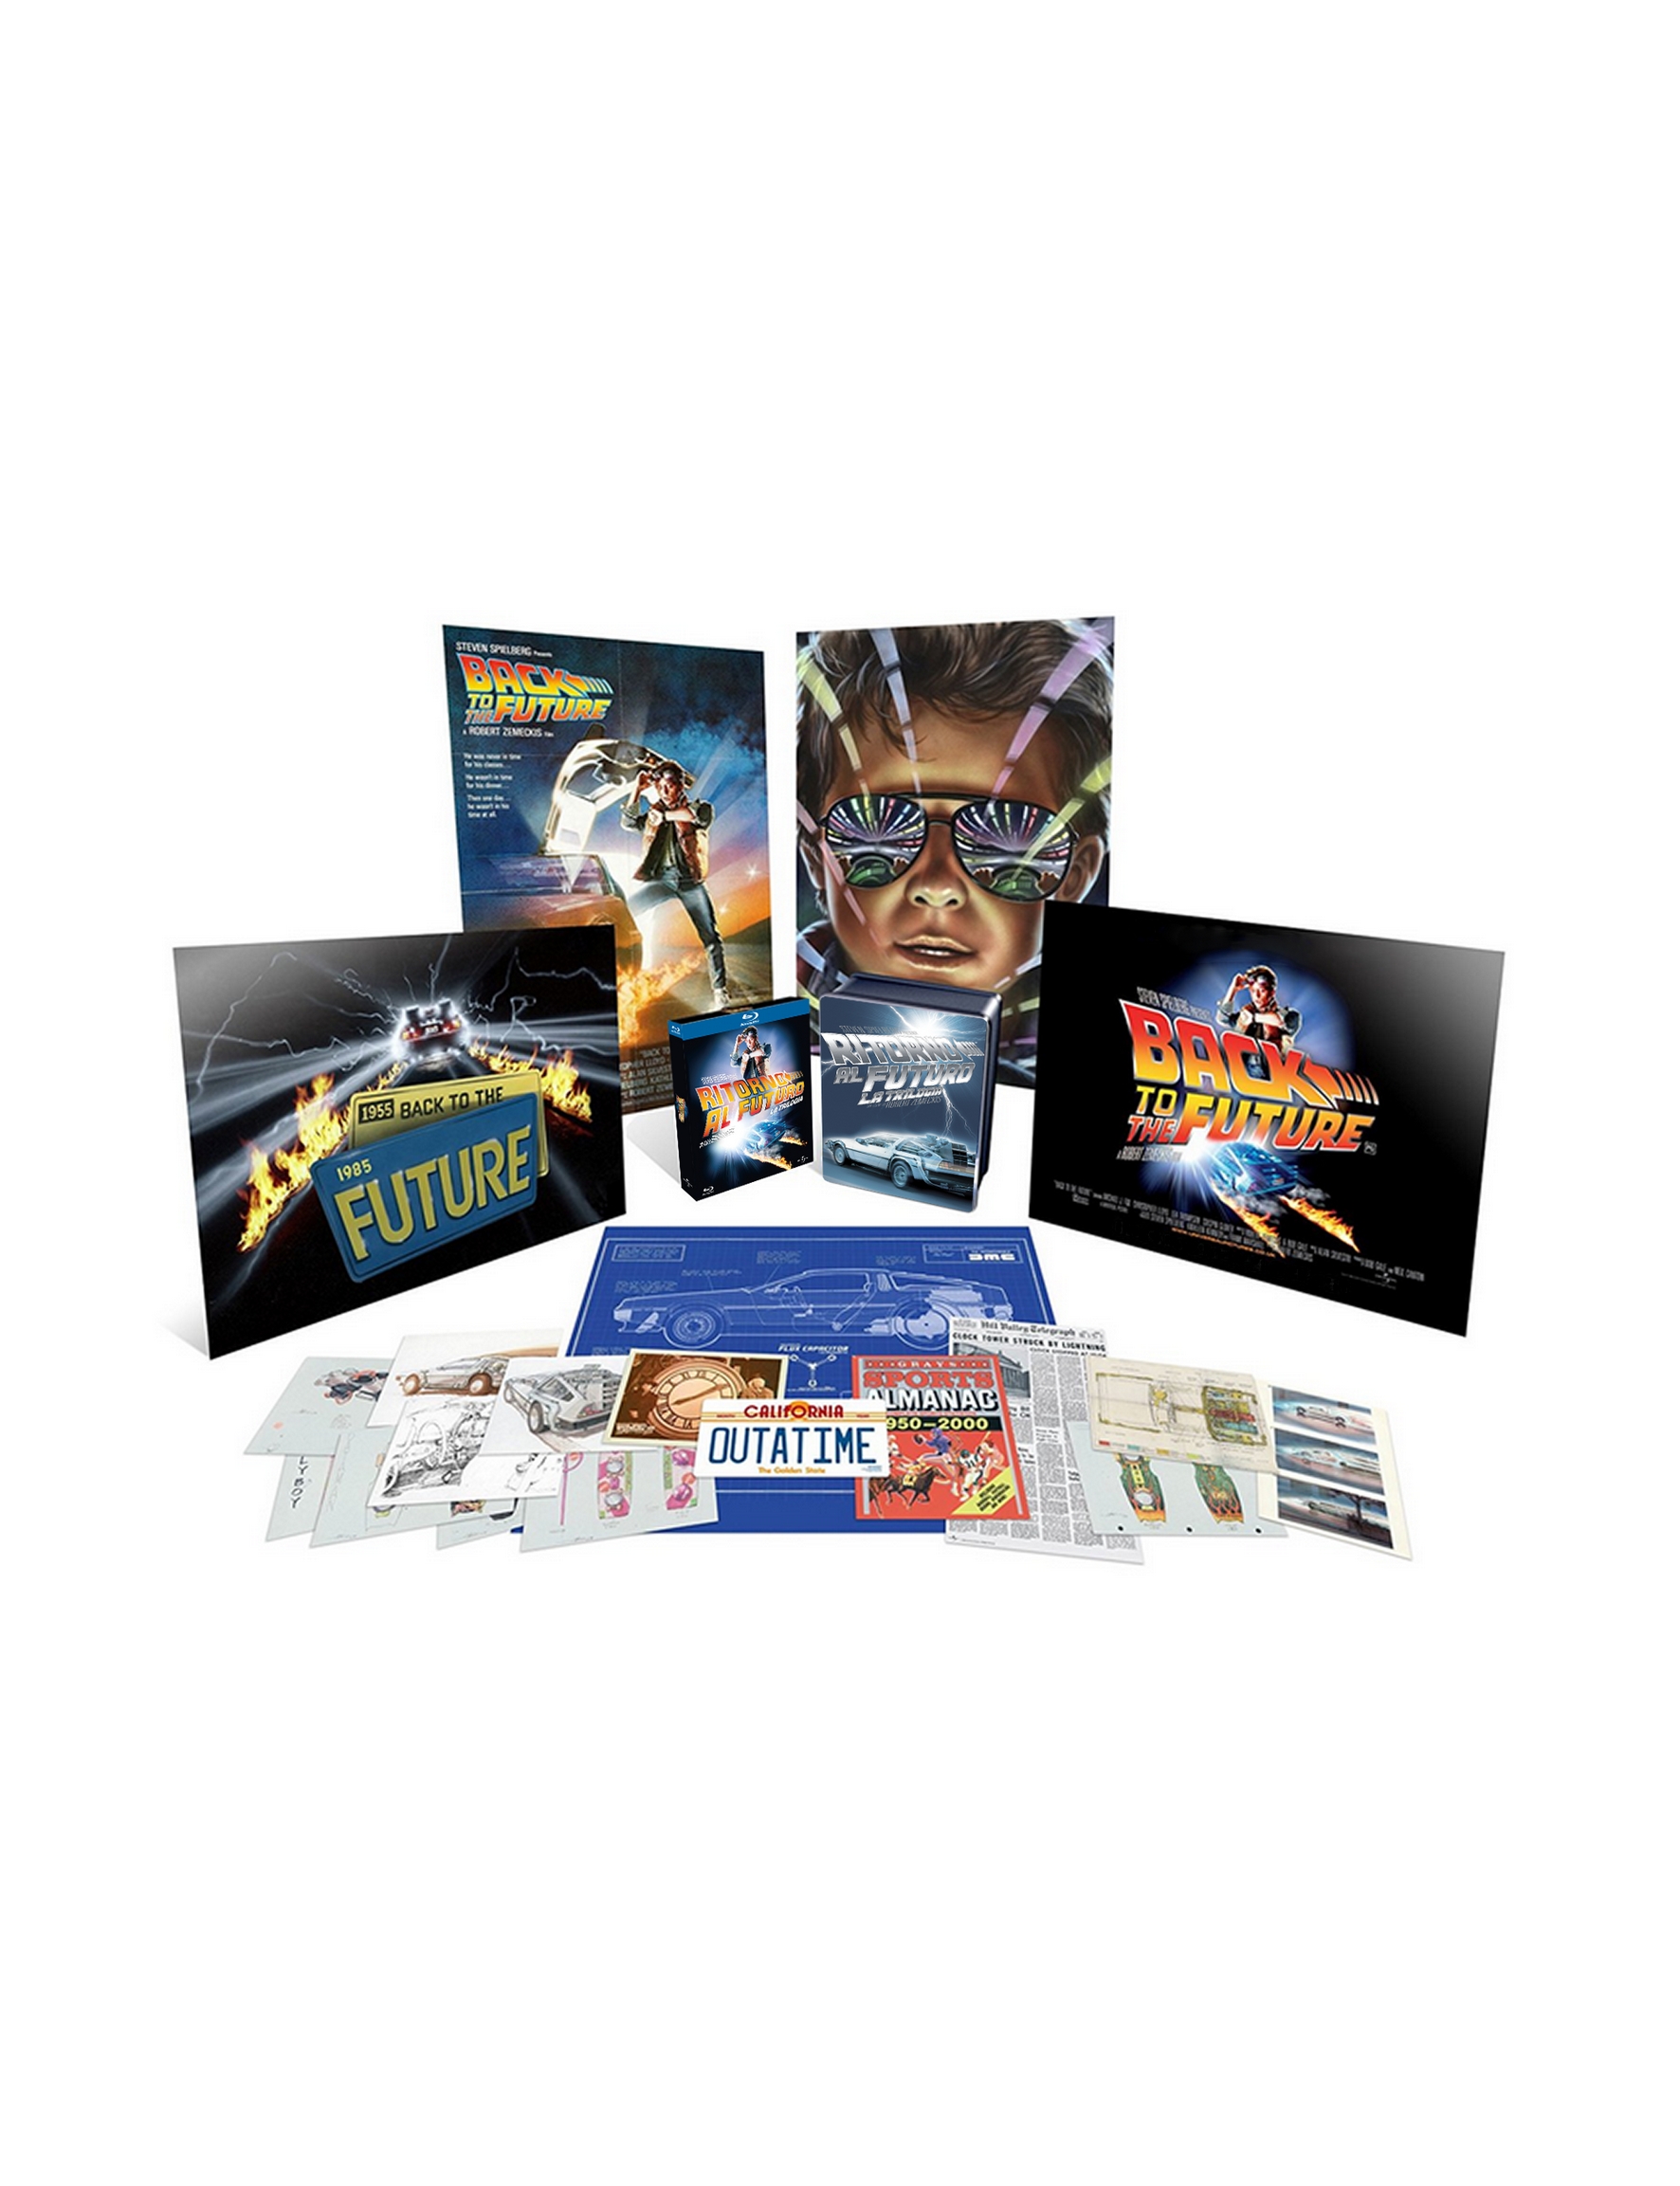 Ritorno Al Futuro Steelbook Collection (3 4K Ultra Hd+3 Blu-Ray)